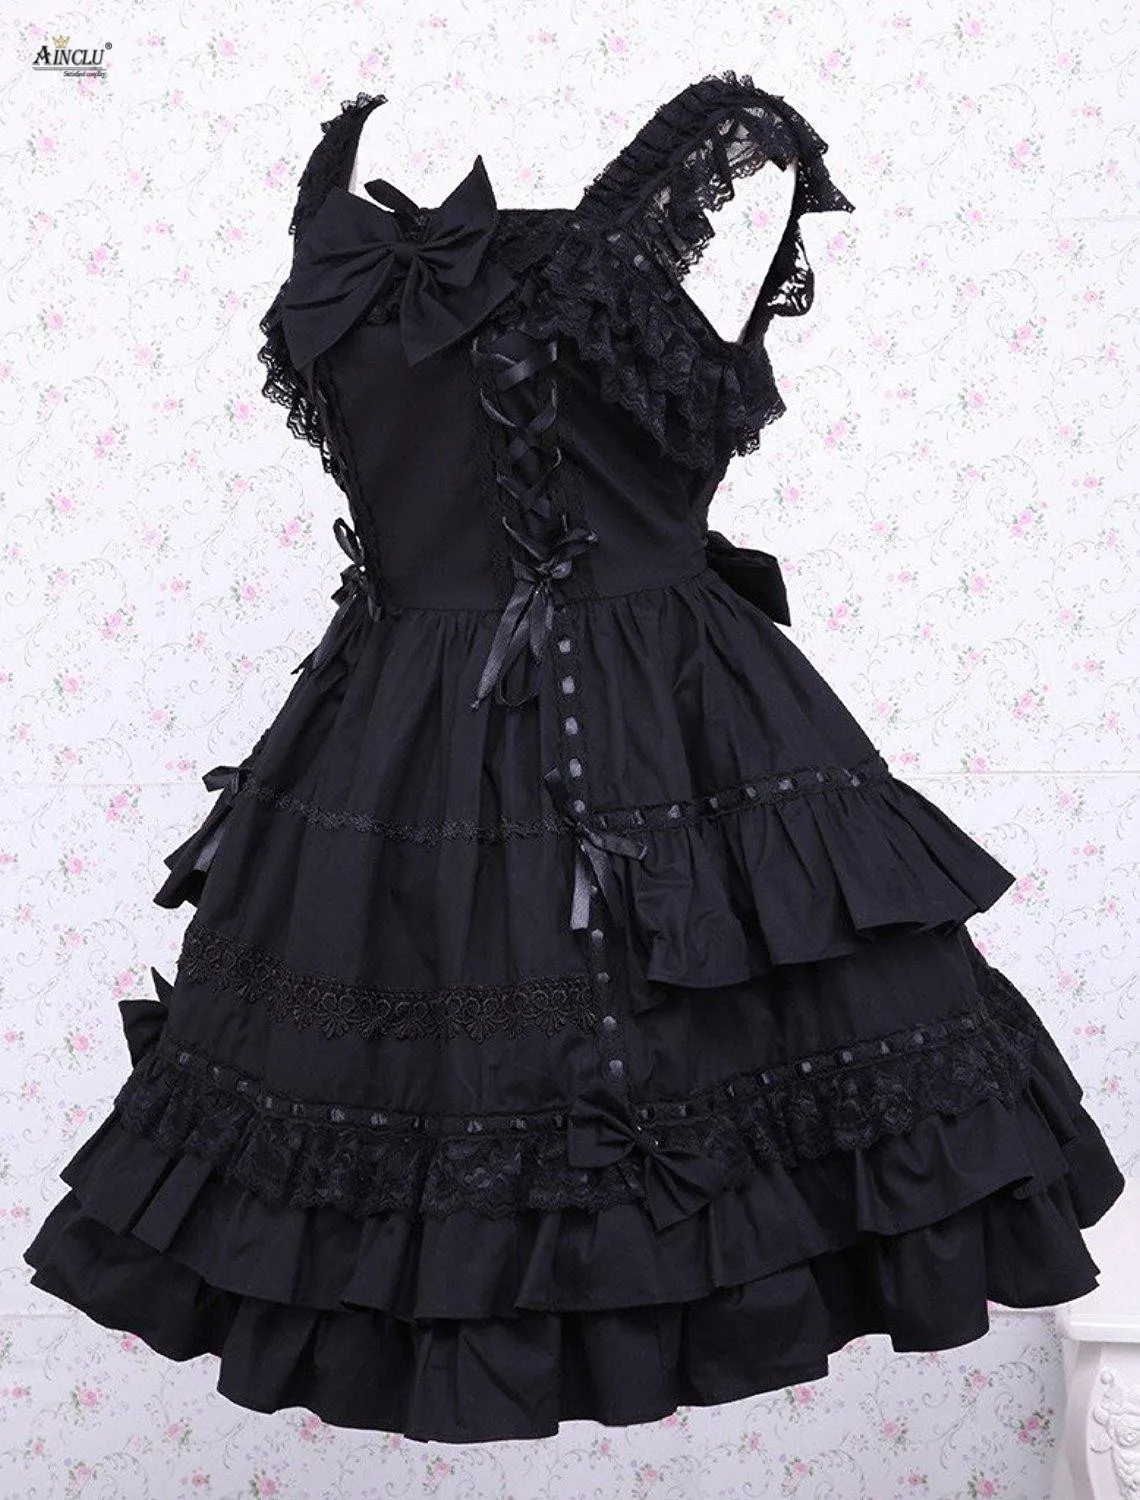 Платье средней длины Ainclu XS-XXL женское хлопковое черное платье без рукавов классическое платье лолиты с кружевом/бантом/лентой вечерние/другие